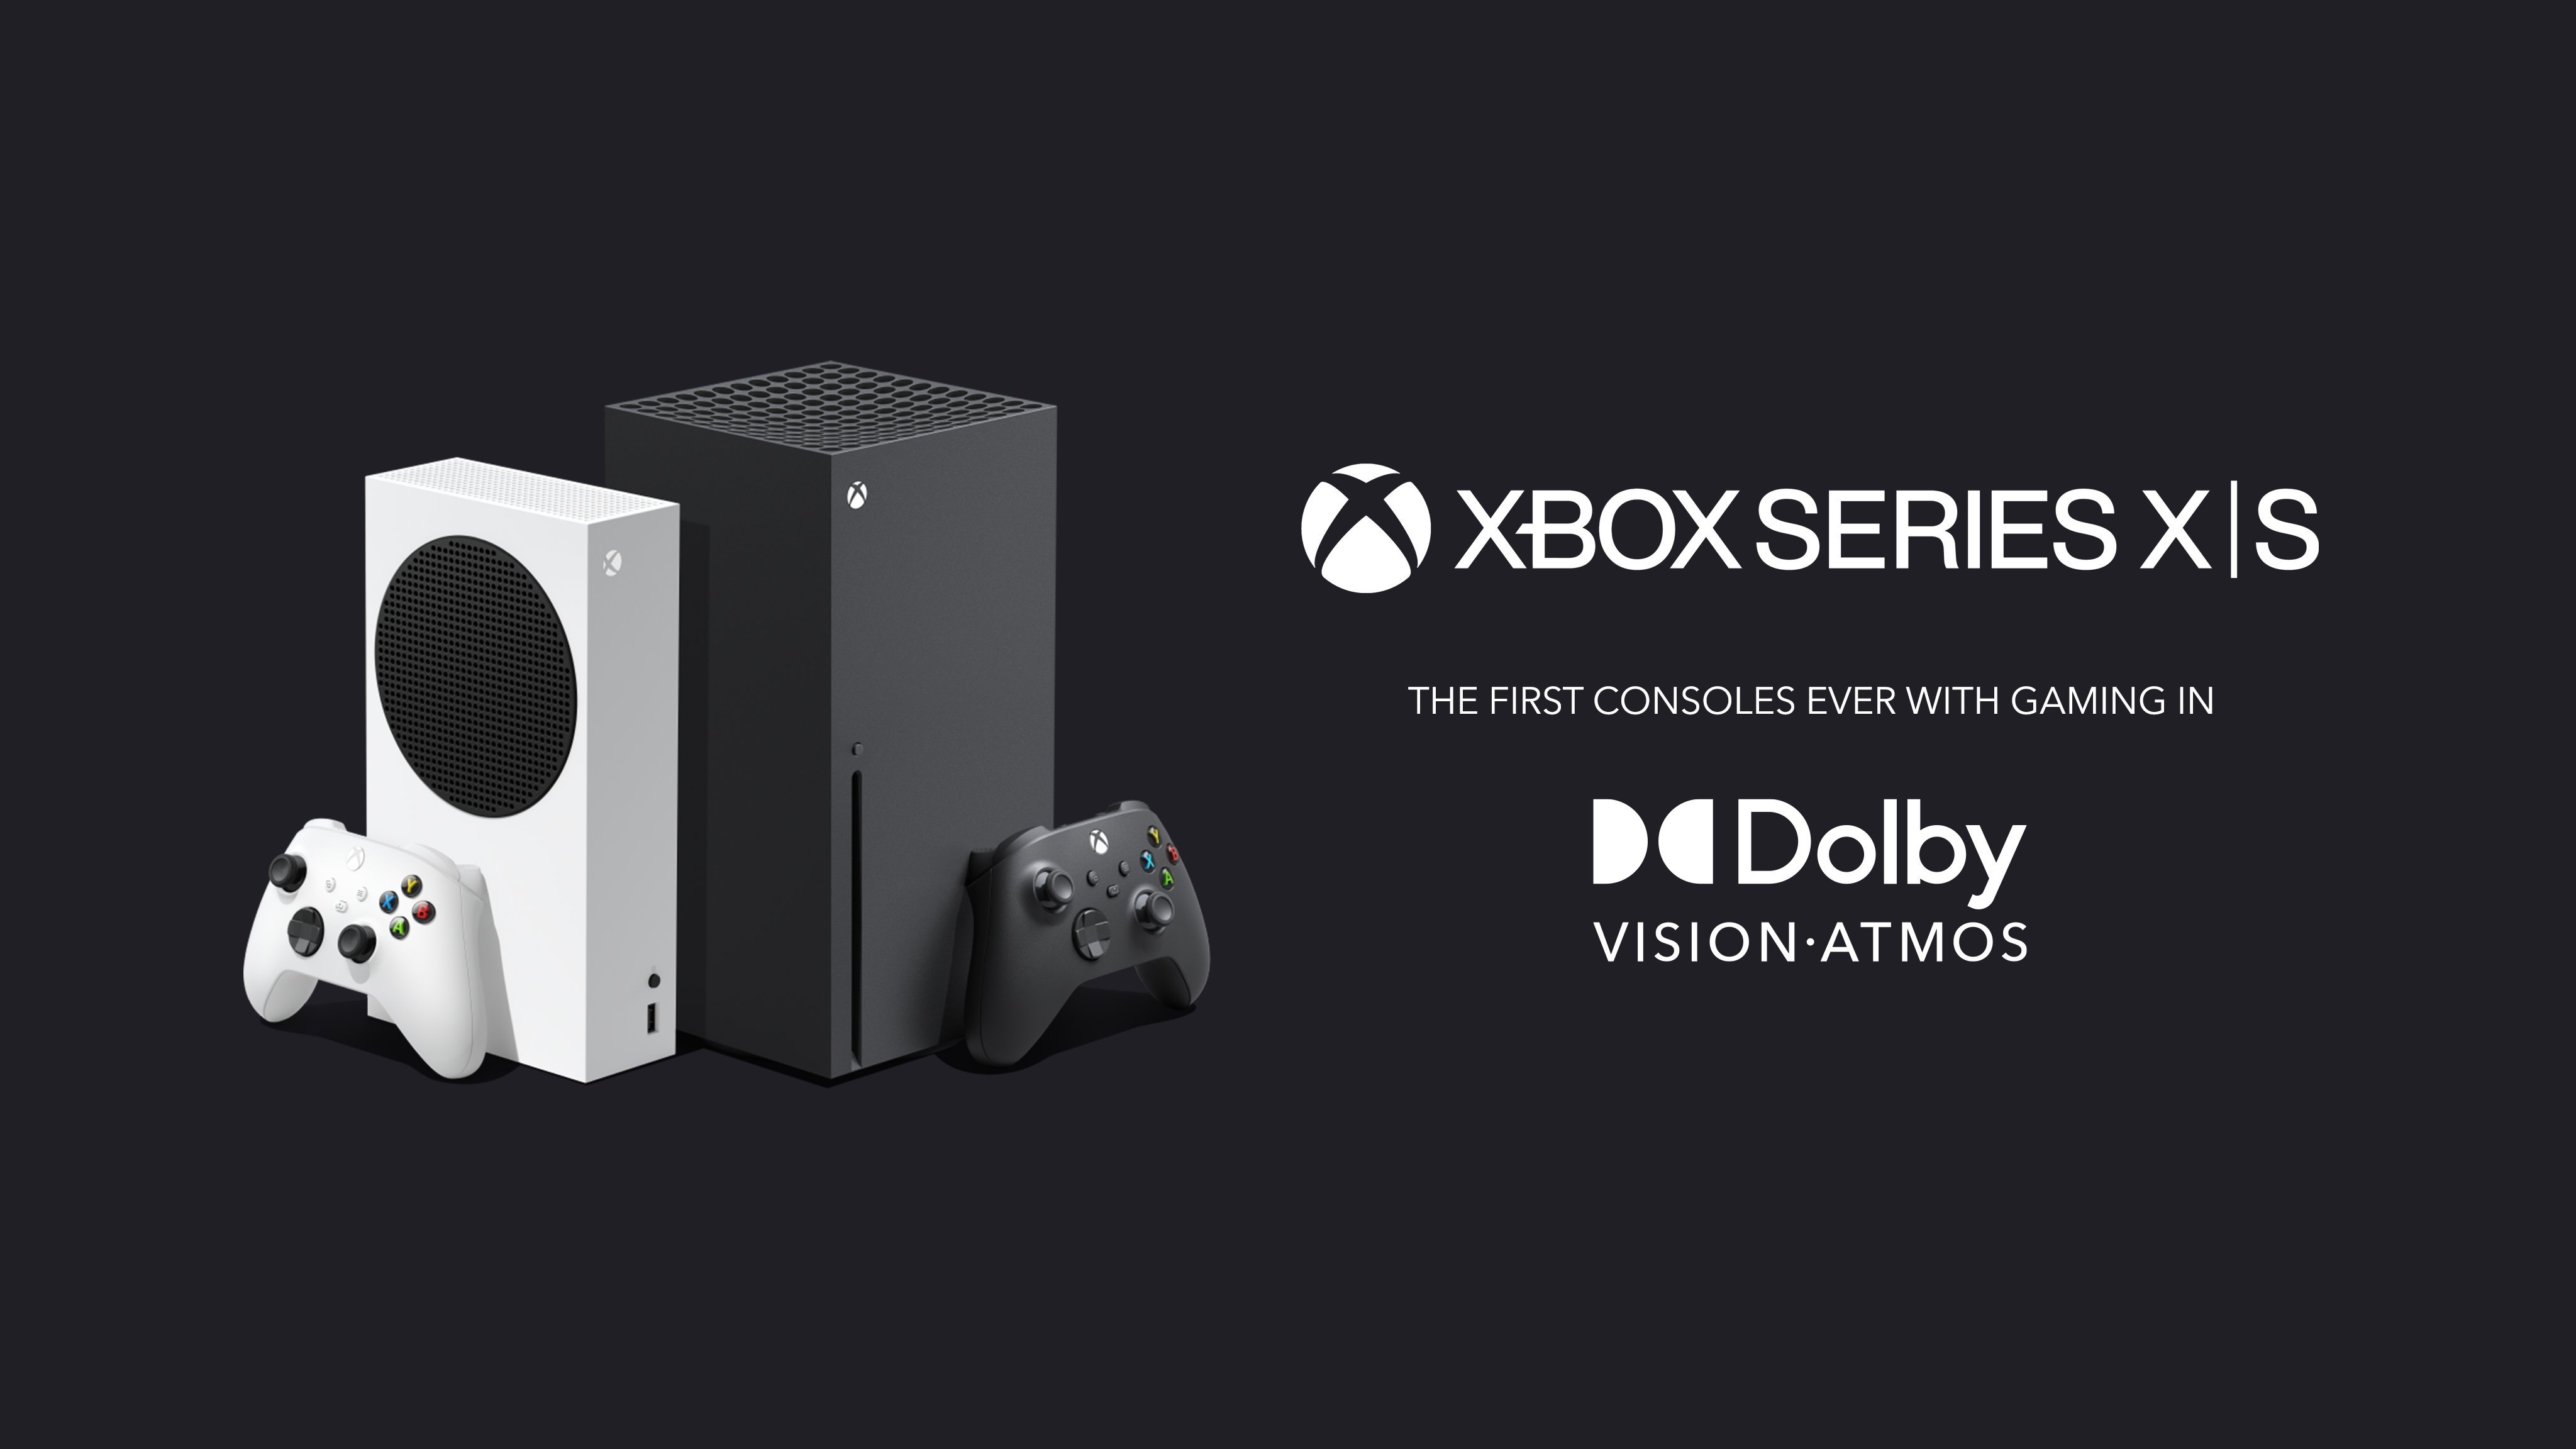 Herní konzole Xbox Series X se pyšní technologiemi pro simulaci prostorového zvuku, jako je DTS 5,1, L-PCM, Dolby Digital 5.1, Dolby TrueHD a Dolby Atmos, které vás teleportují přímo do centra dění prostřednictvím post-processingu.